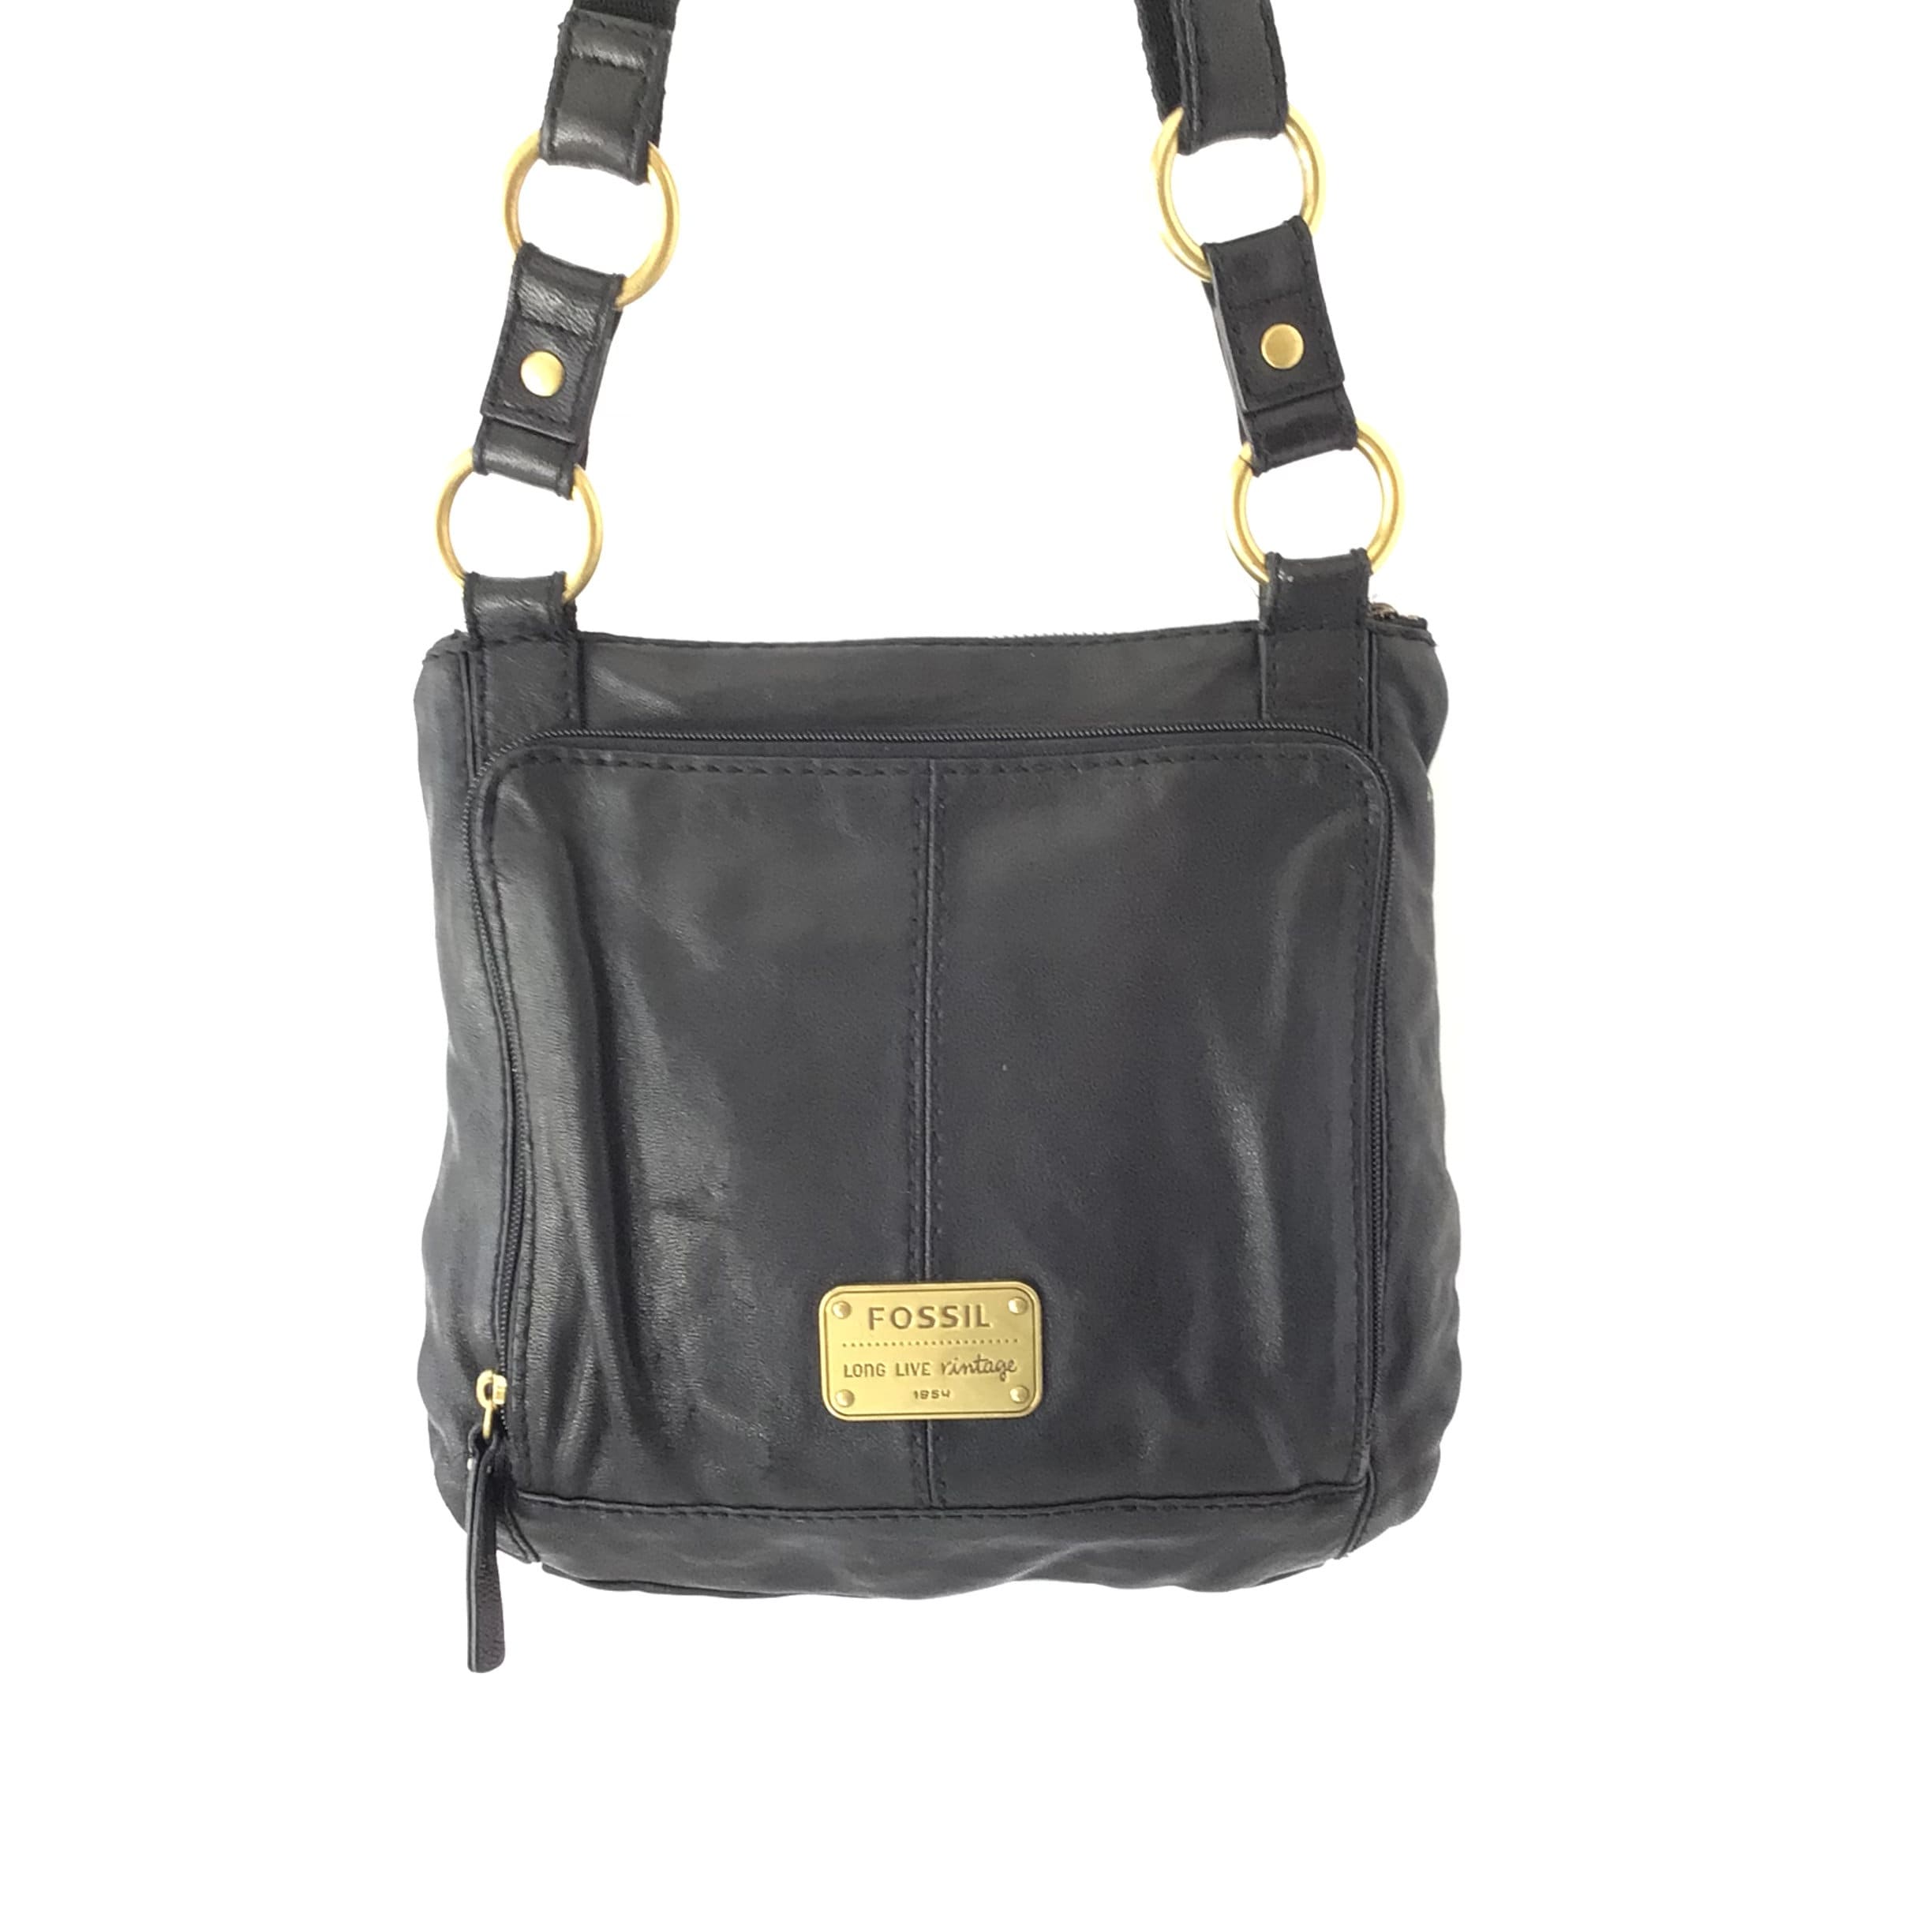 Fossil Crossbody Black Bags & Handbags for Women for sale | eBay